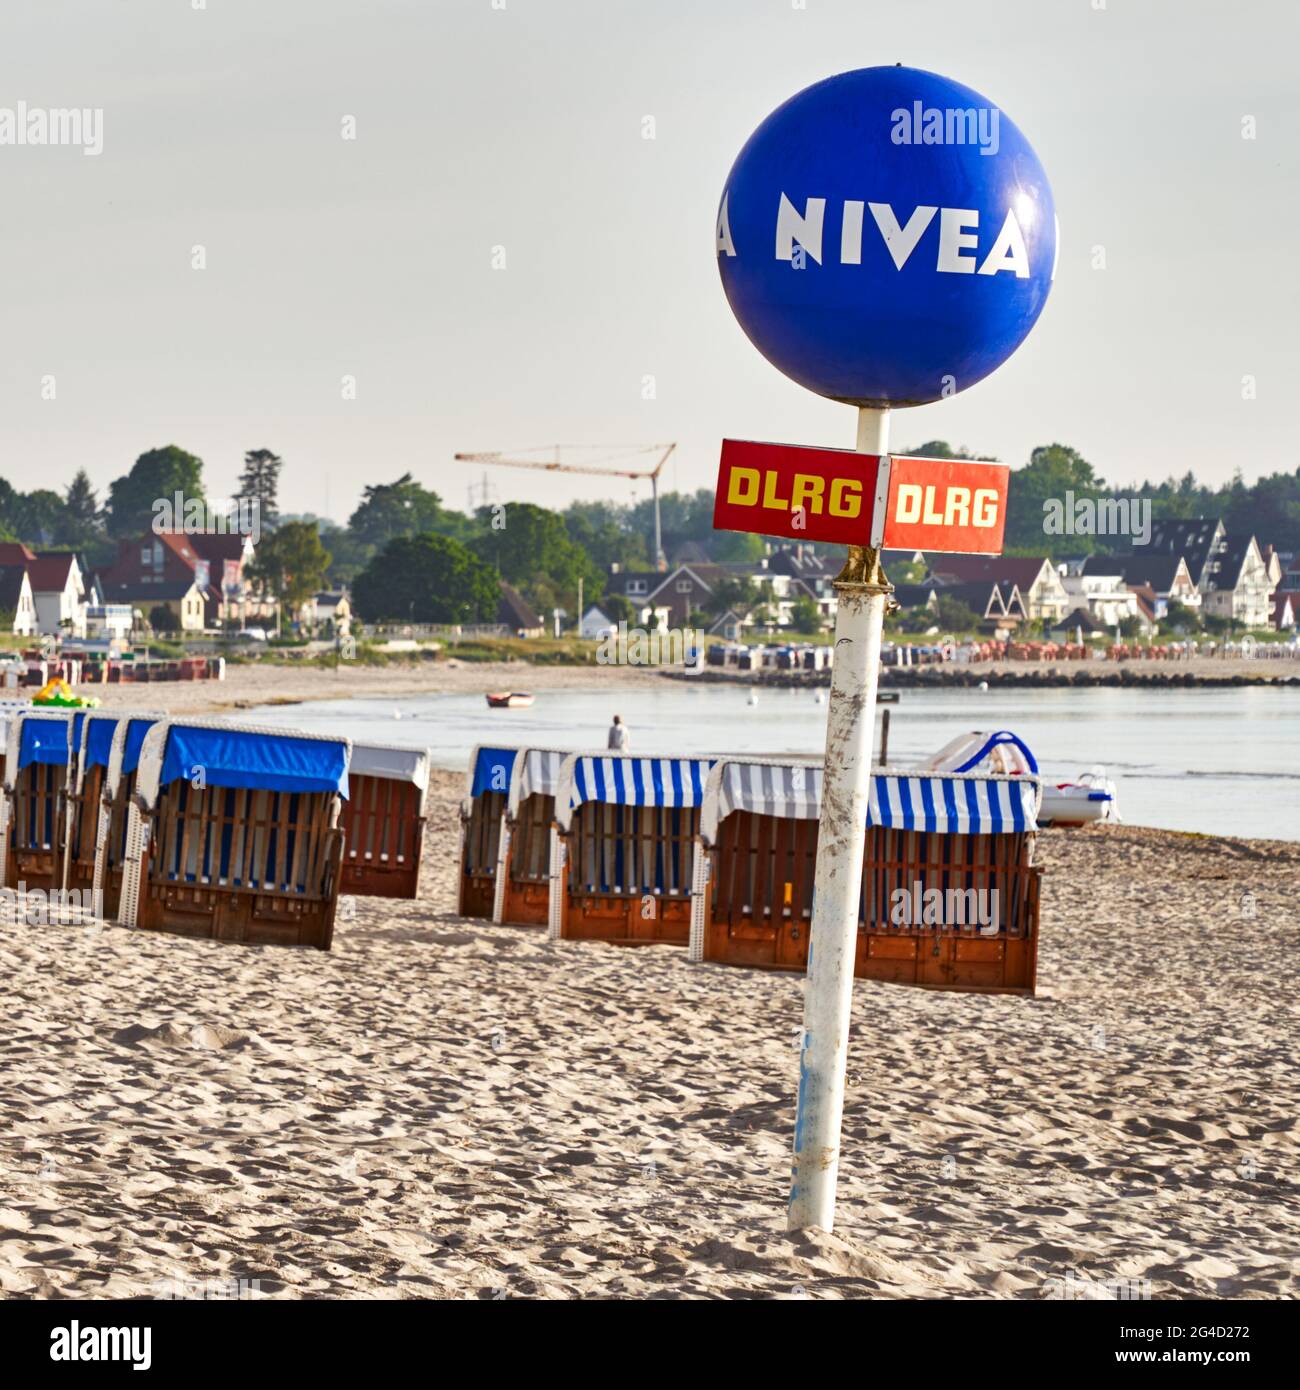 NIVEA Beach ball sur un poteau dans le sable sur la plage en face de chaises de plage fermées, illustration éditoriale, Scharbeutz, Allemagne, juin 9., 2021 Banque D'Images